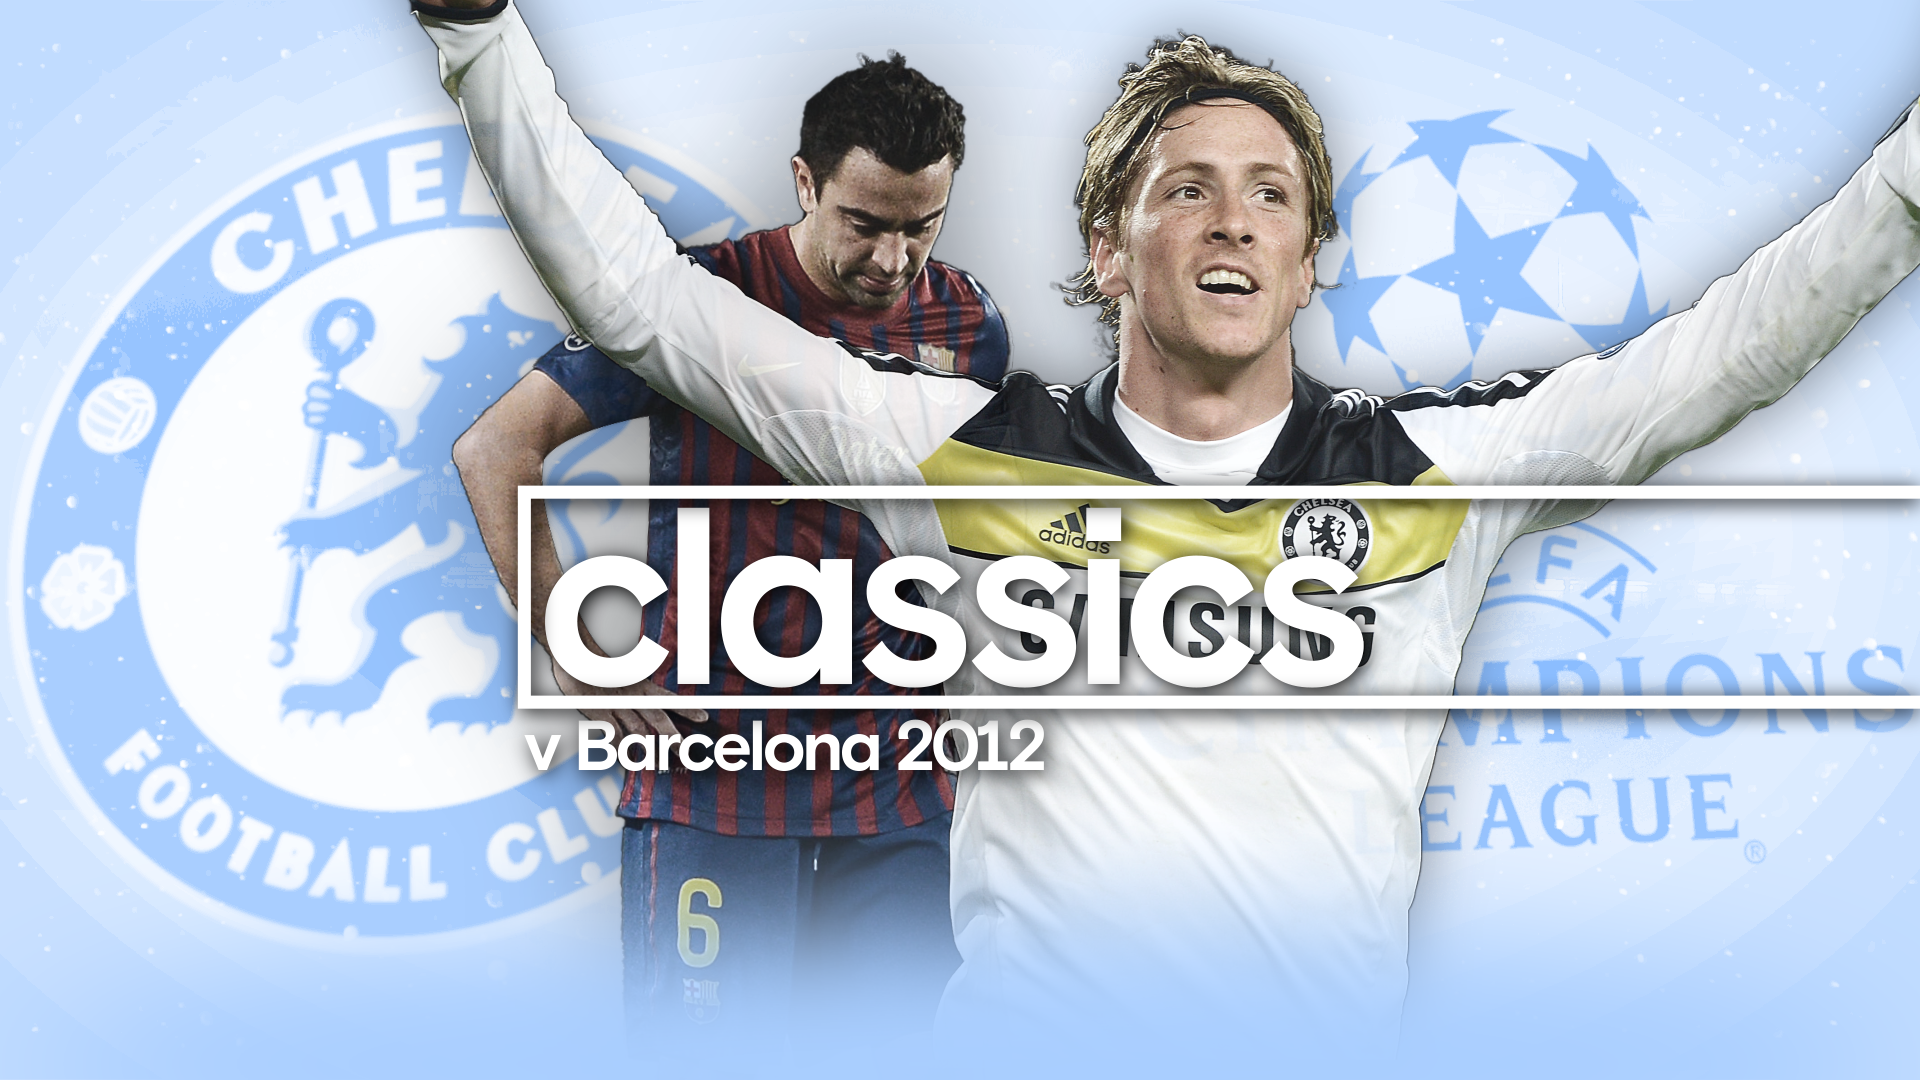 Futebol, História e Futilidades: Champions League 2011/2012 - Chelsea x  Barcelona